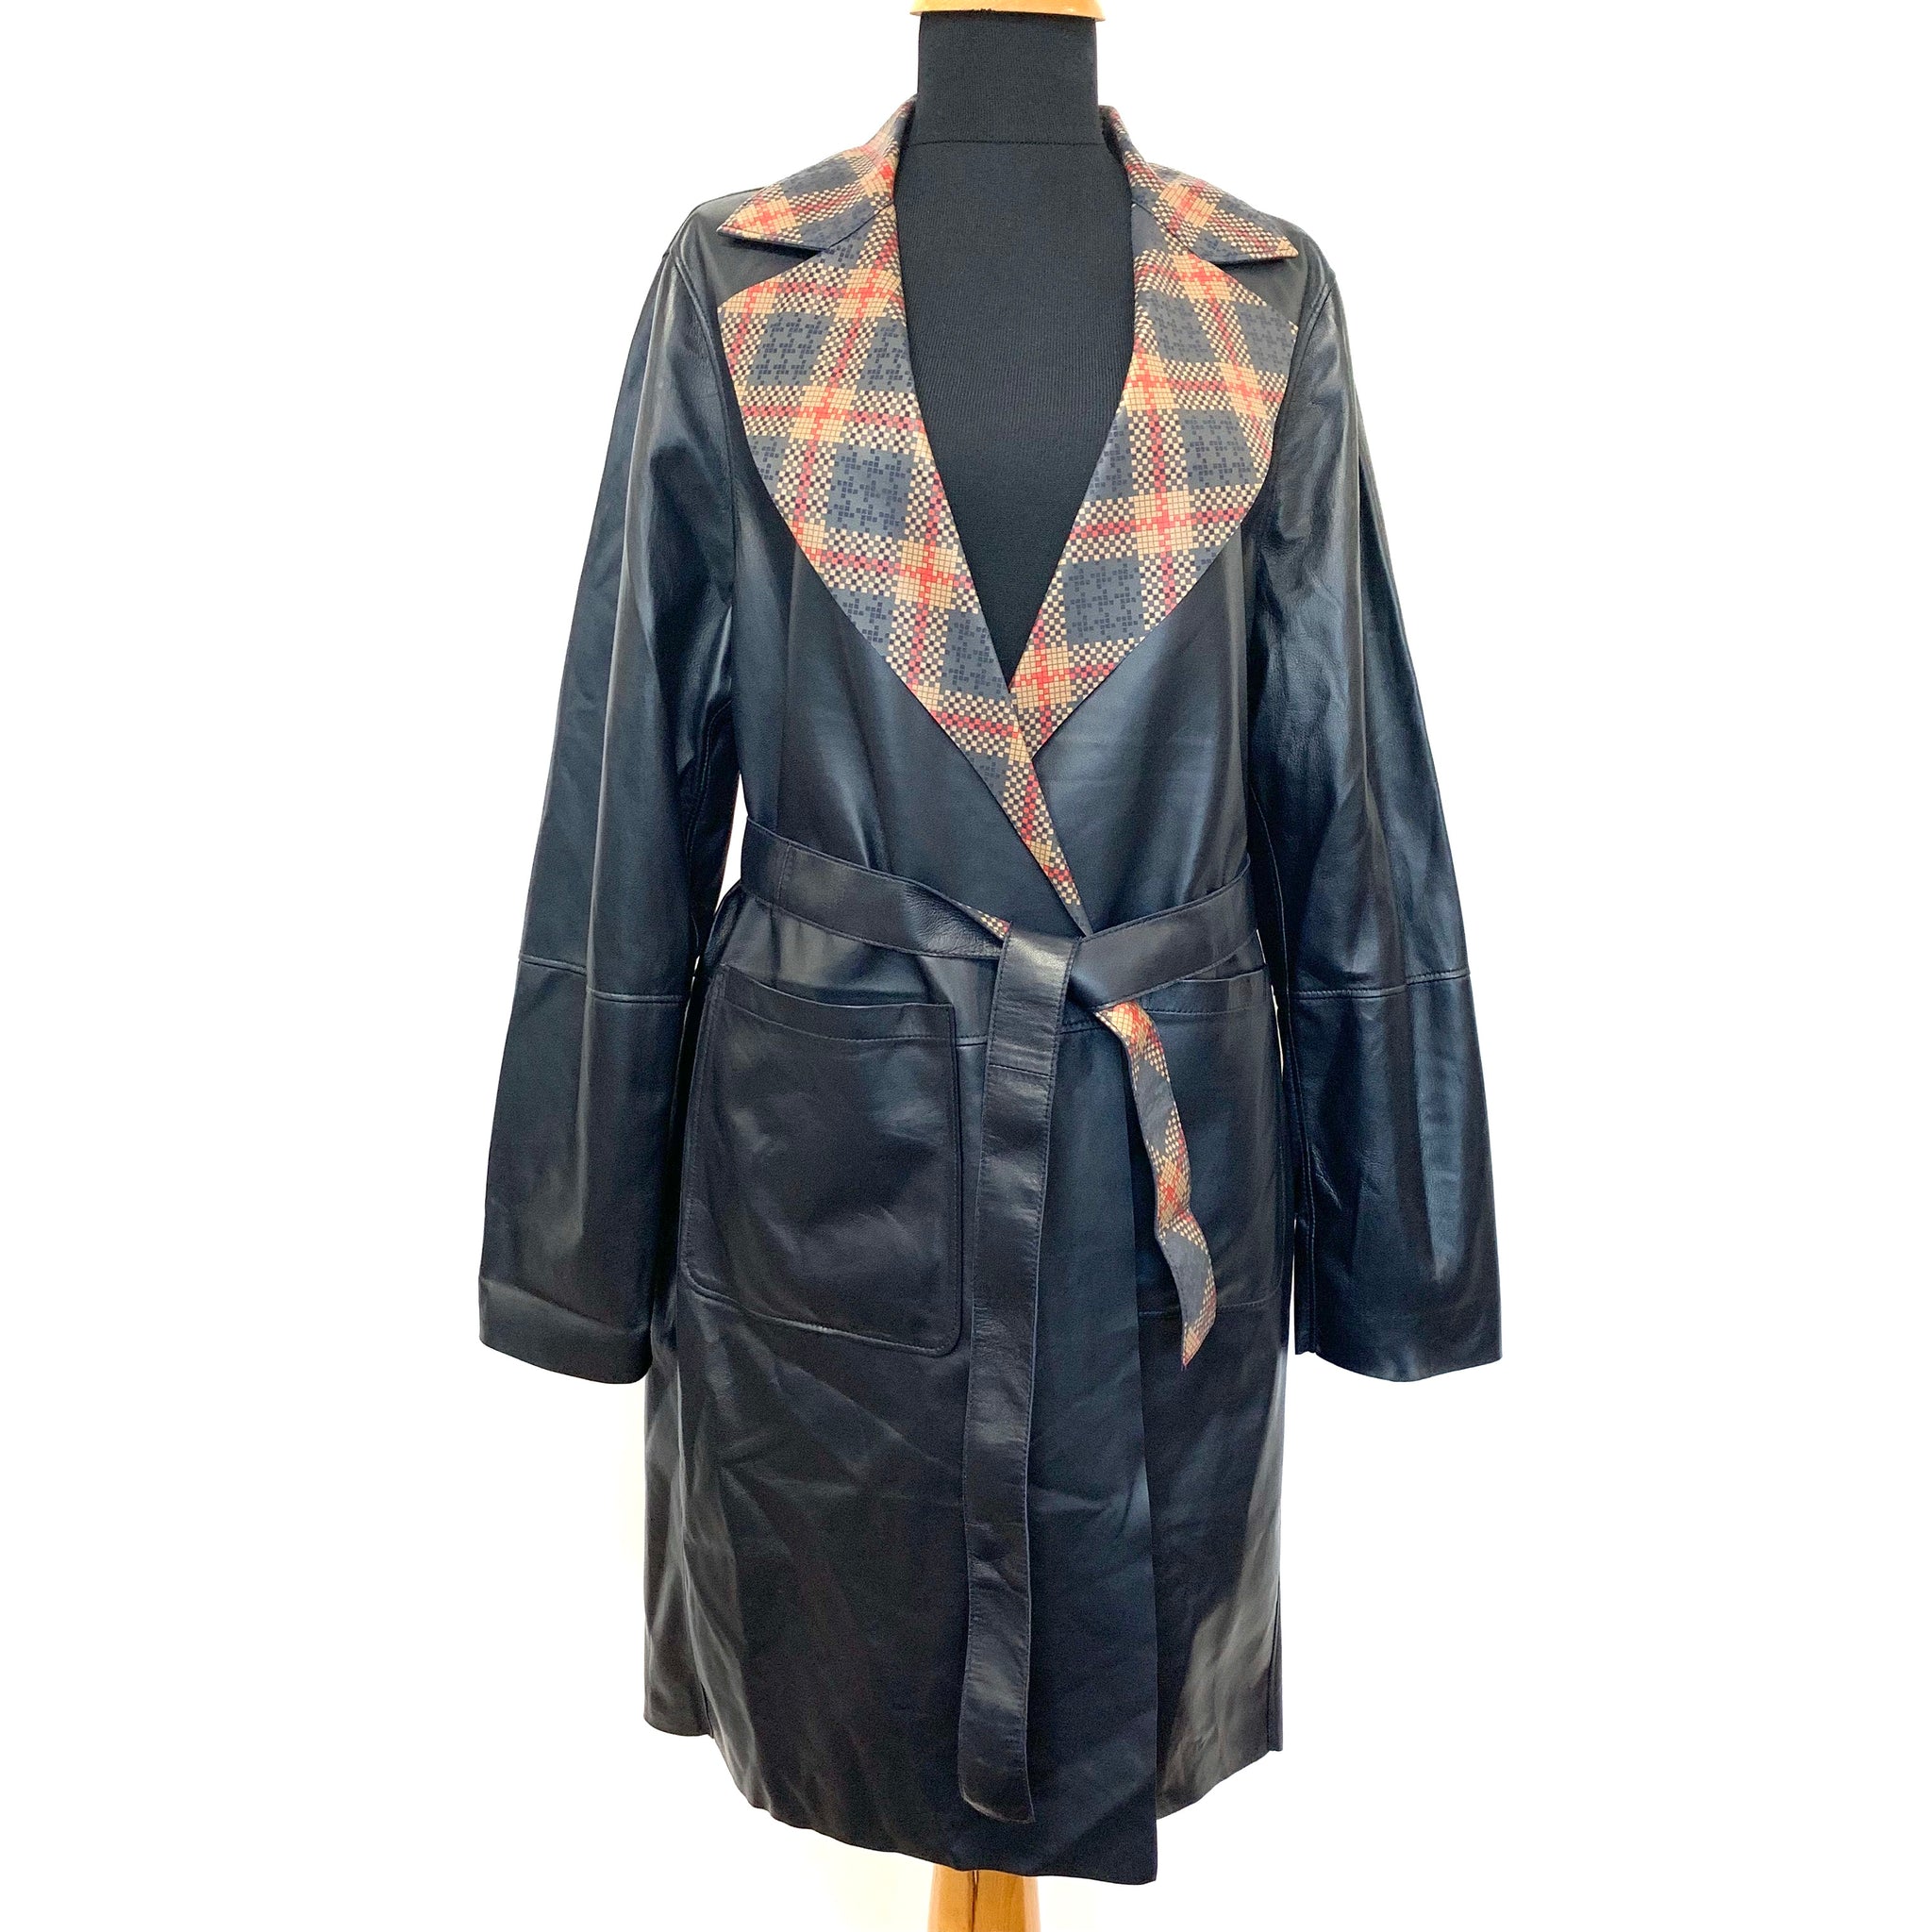 Daphne Leather Jacket